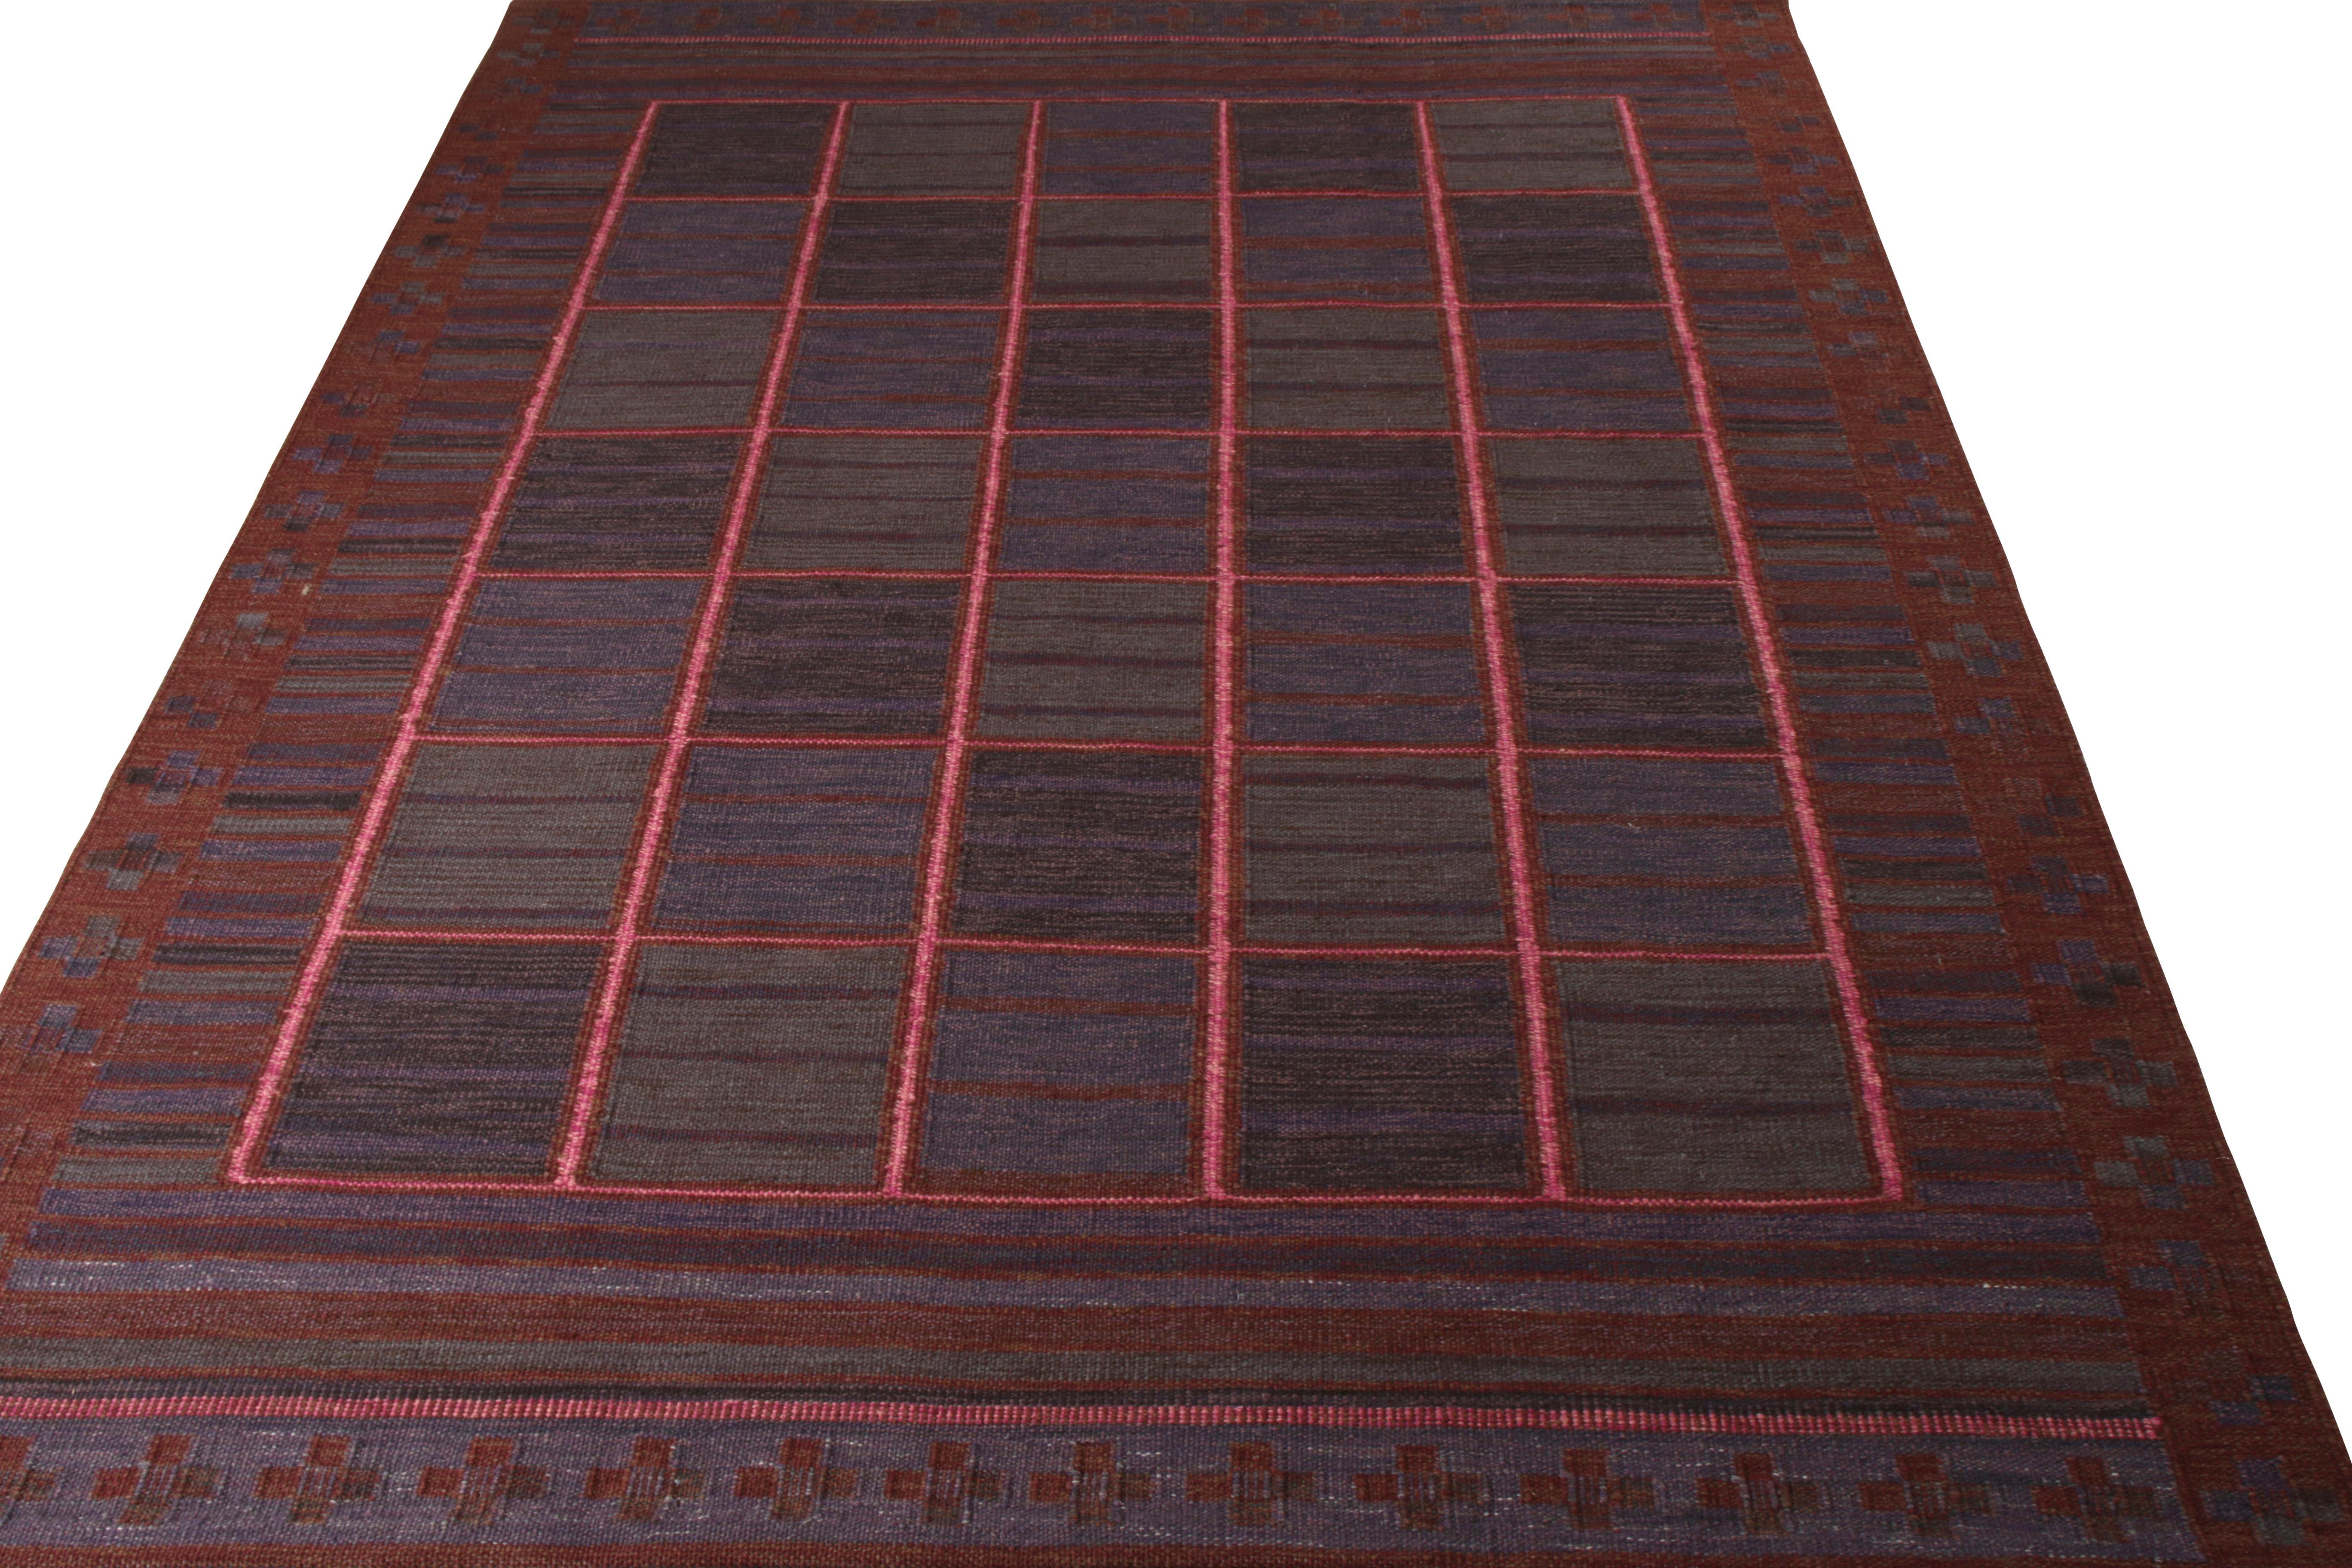 Als Teil der gefeierten Scandinavian Collection'S von Rug & Kilim ist dieser 9x12 Kilim-Teppich ein Beispiel für die schwedische Moderne als neue Designsprache. Die rätselhafte Farbgebung erzeugt eine Illusion von unterliegenden Strukturen und webt